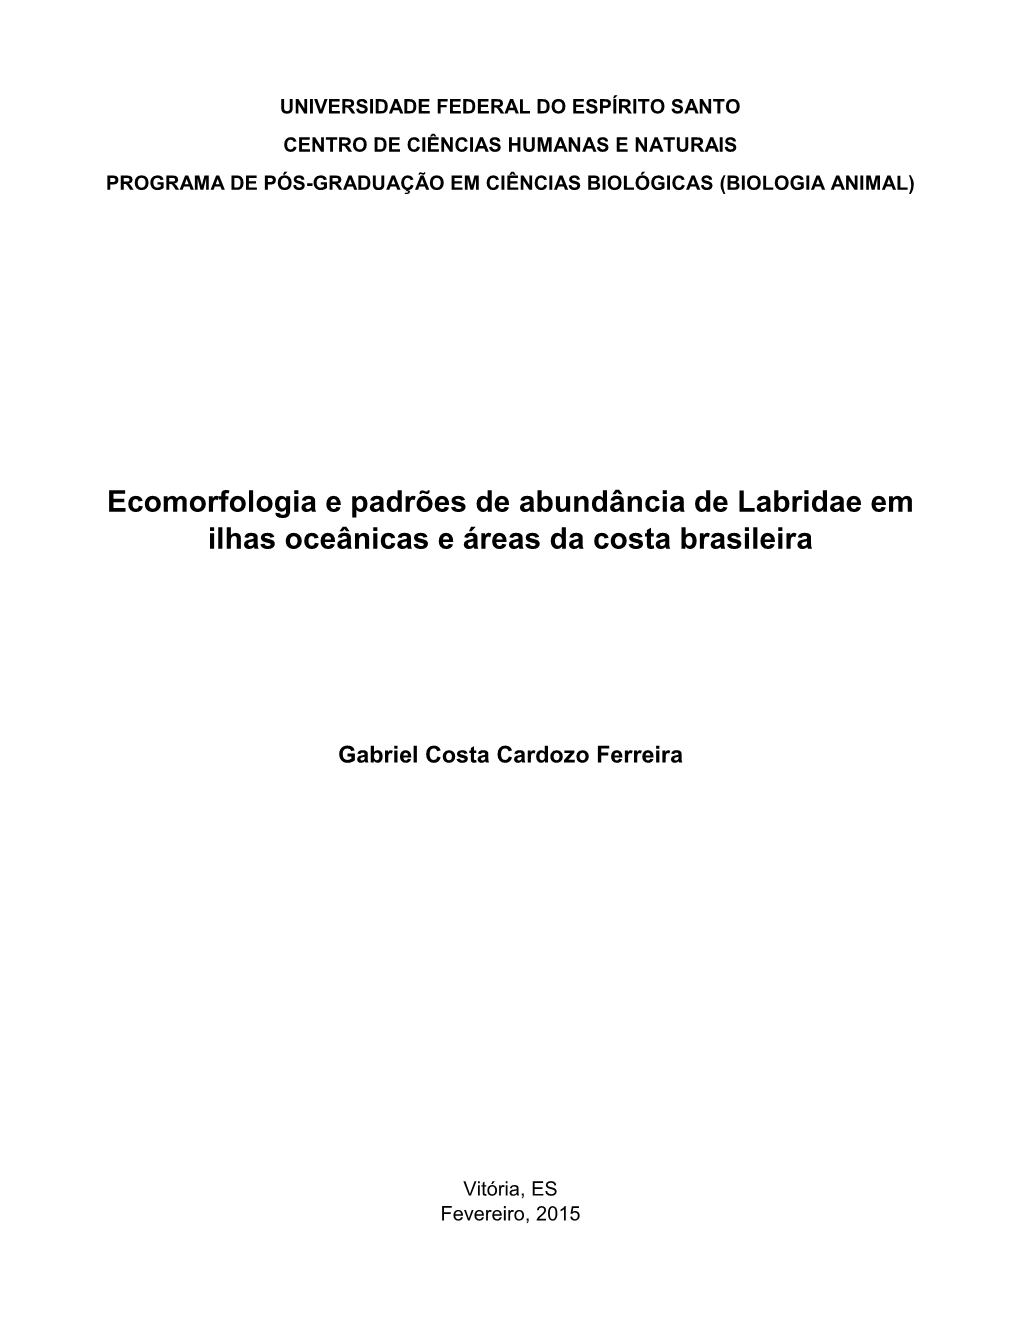 Ecomorfologia E Padrões De Abundância De Labridae Em Ilhas Oceânicas E Áreas Da Costa Brasileira